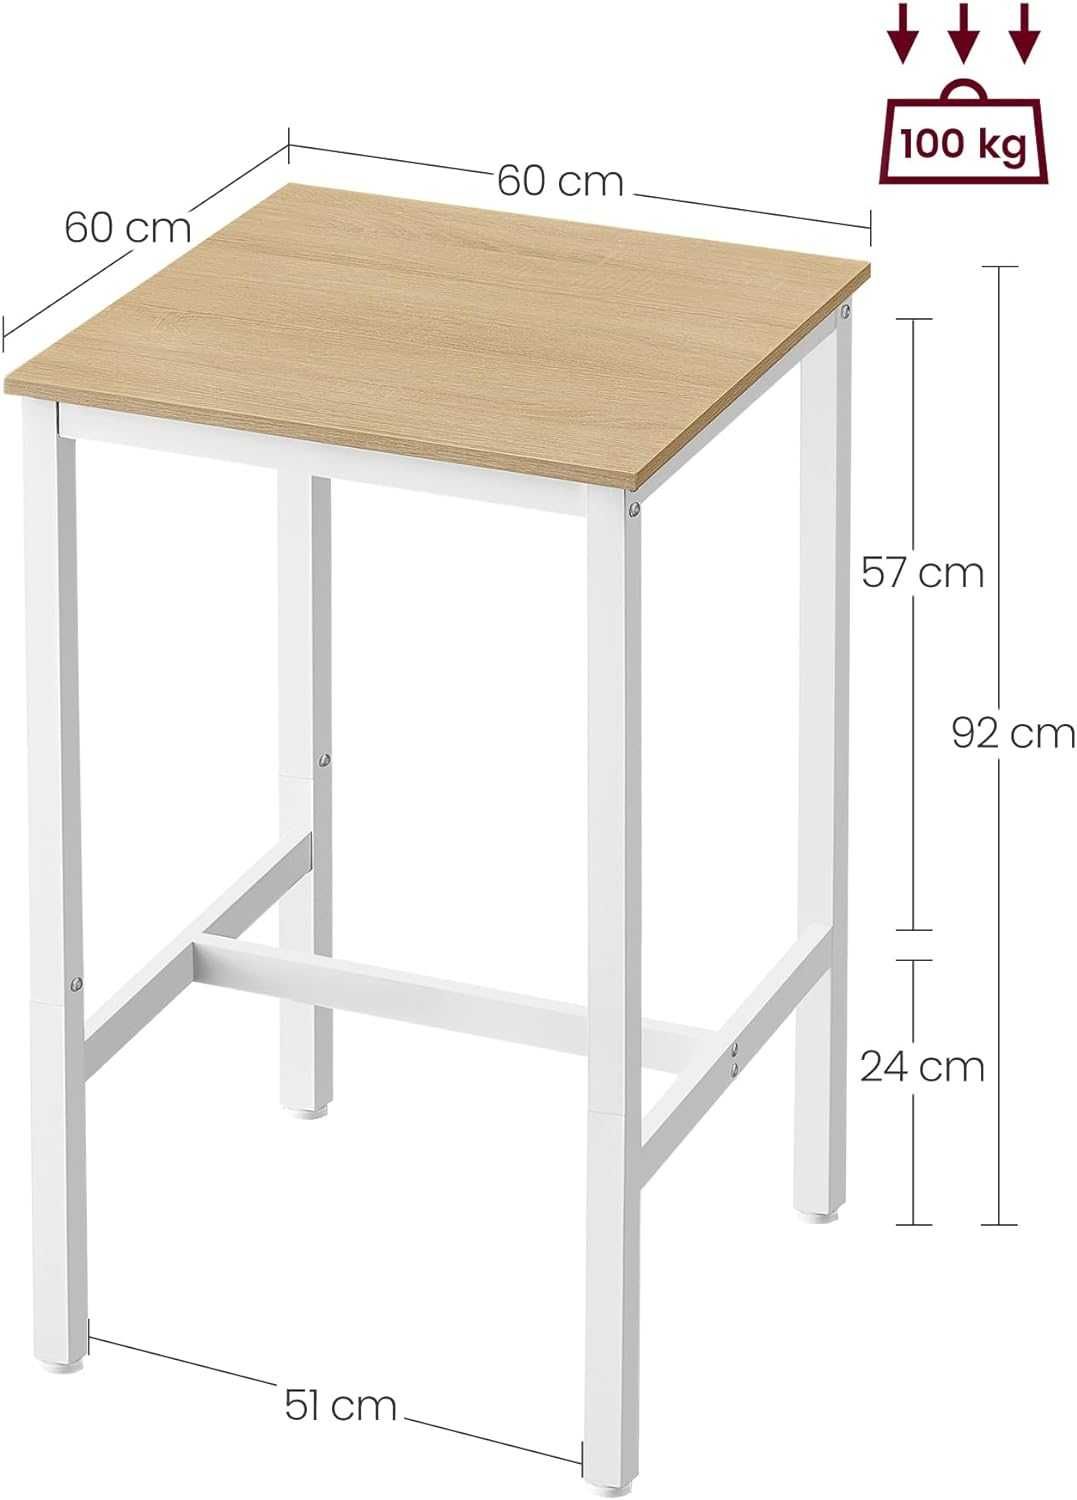 Nowy stolik/ stół/ blat/ kwadratowy/ 60x60x92 cm/ VASAGLE !6805!